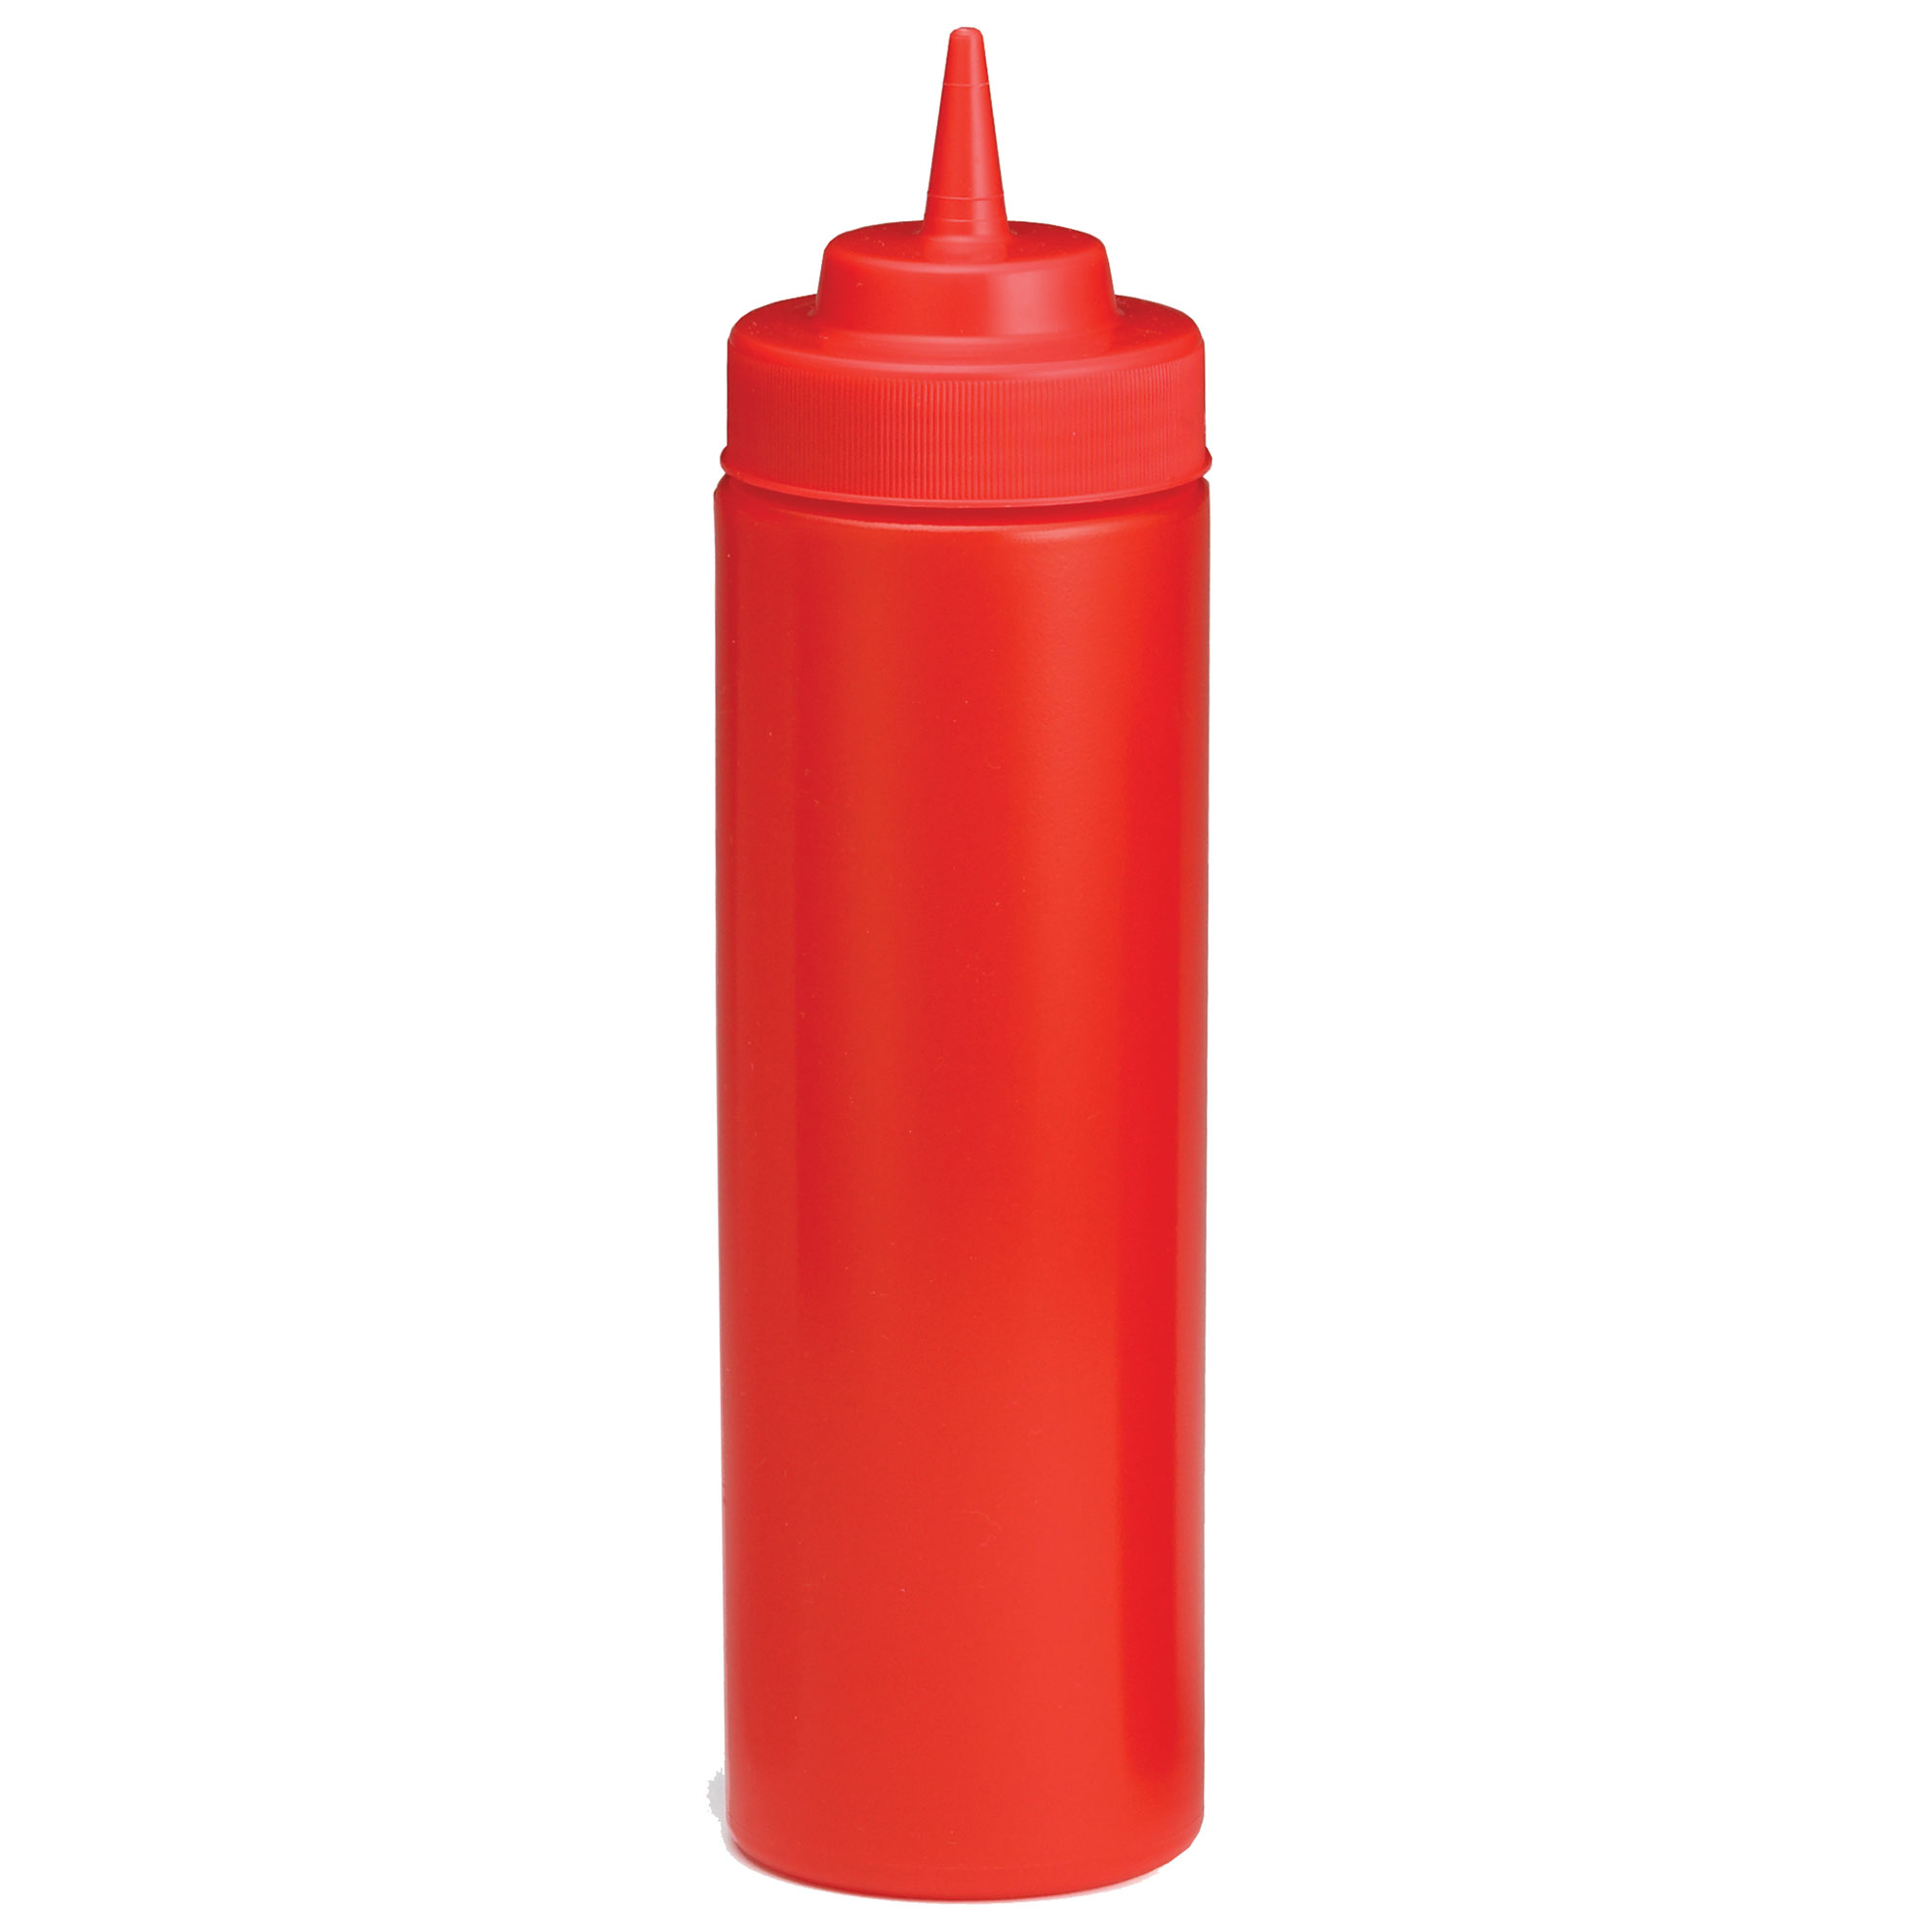 Widemouth Squeeze Dispenser Bottles 8oz (10583k) RED